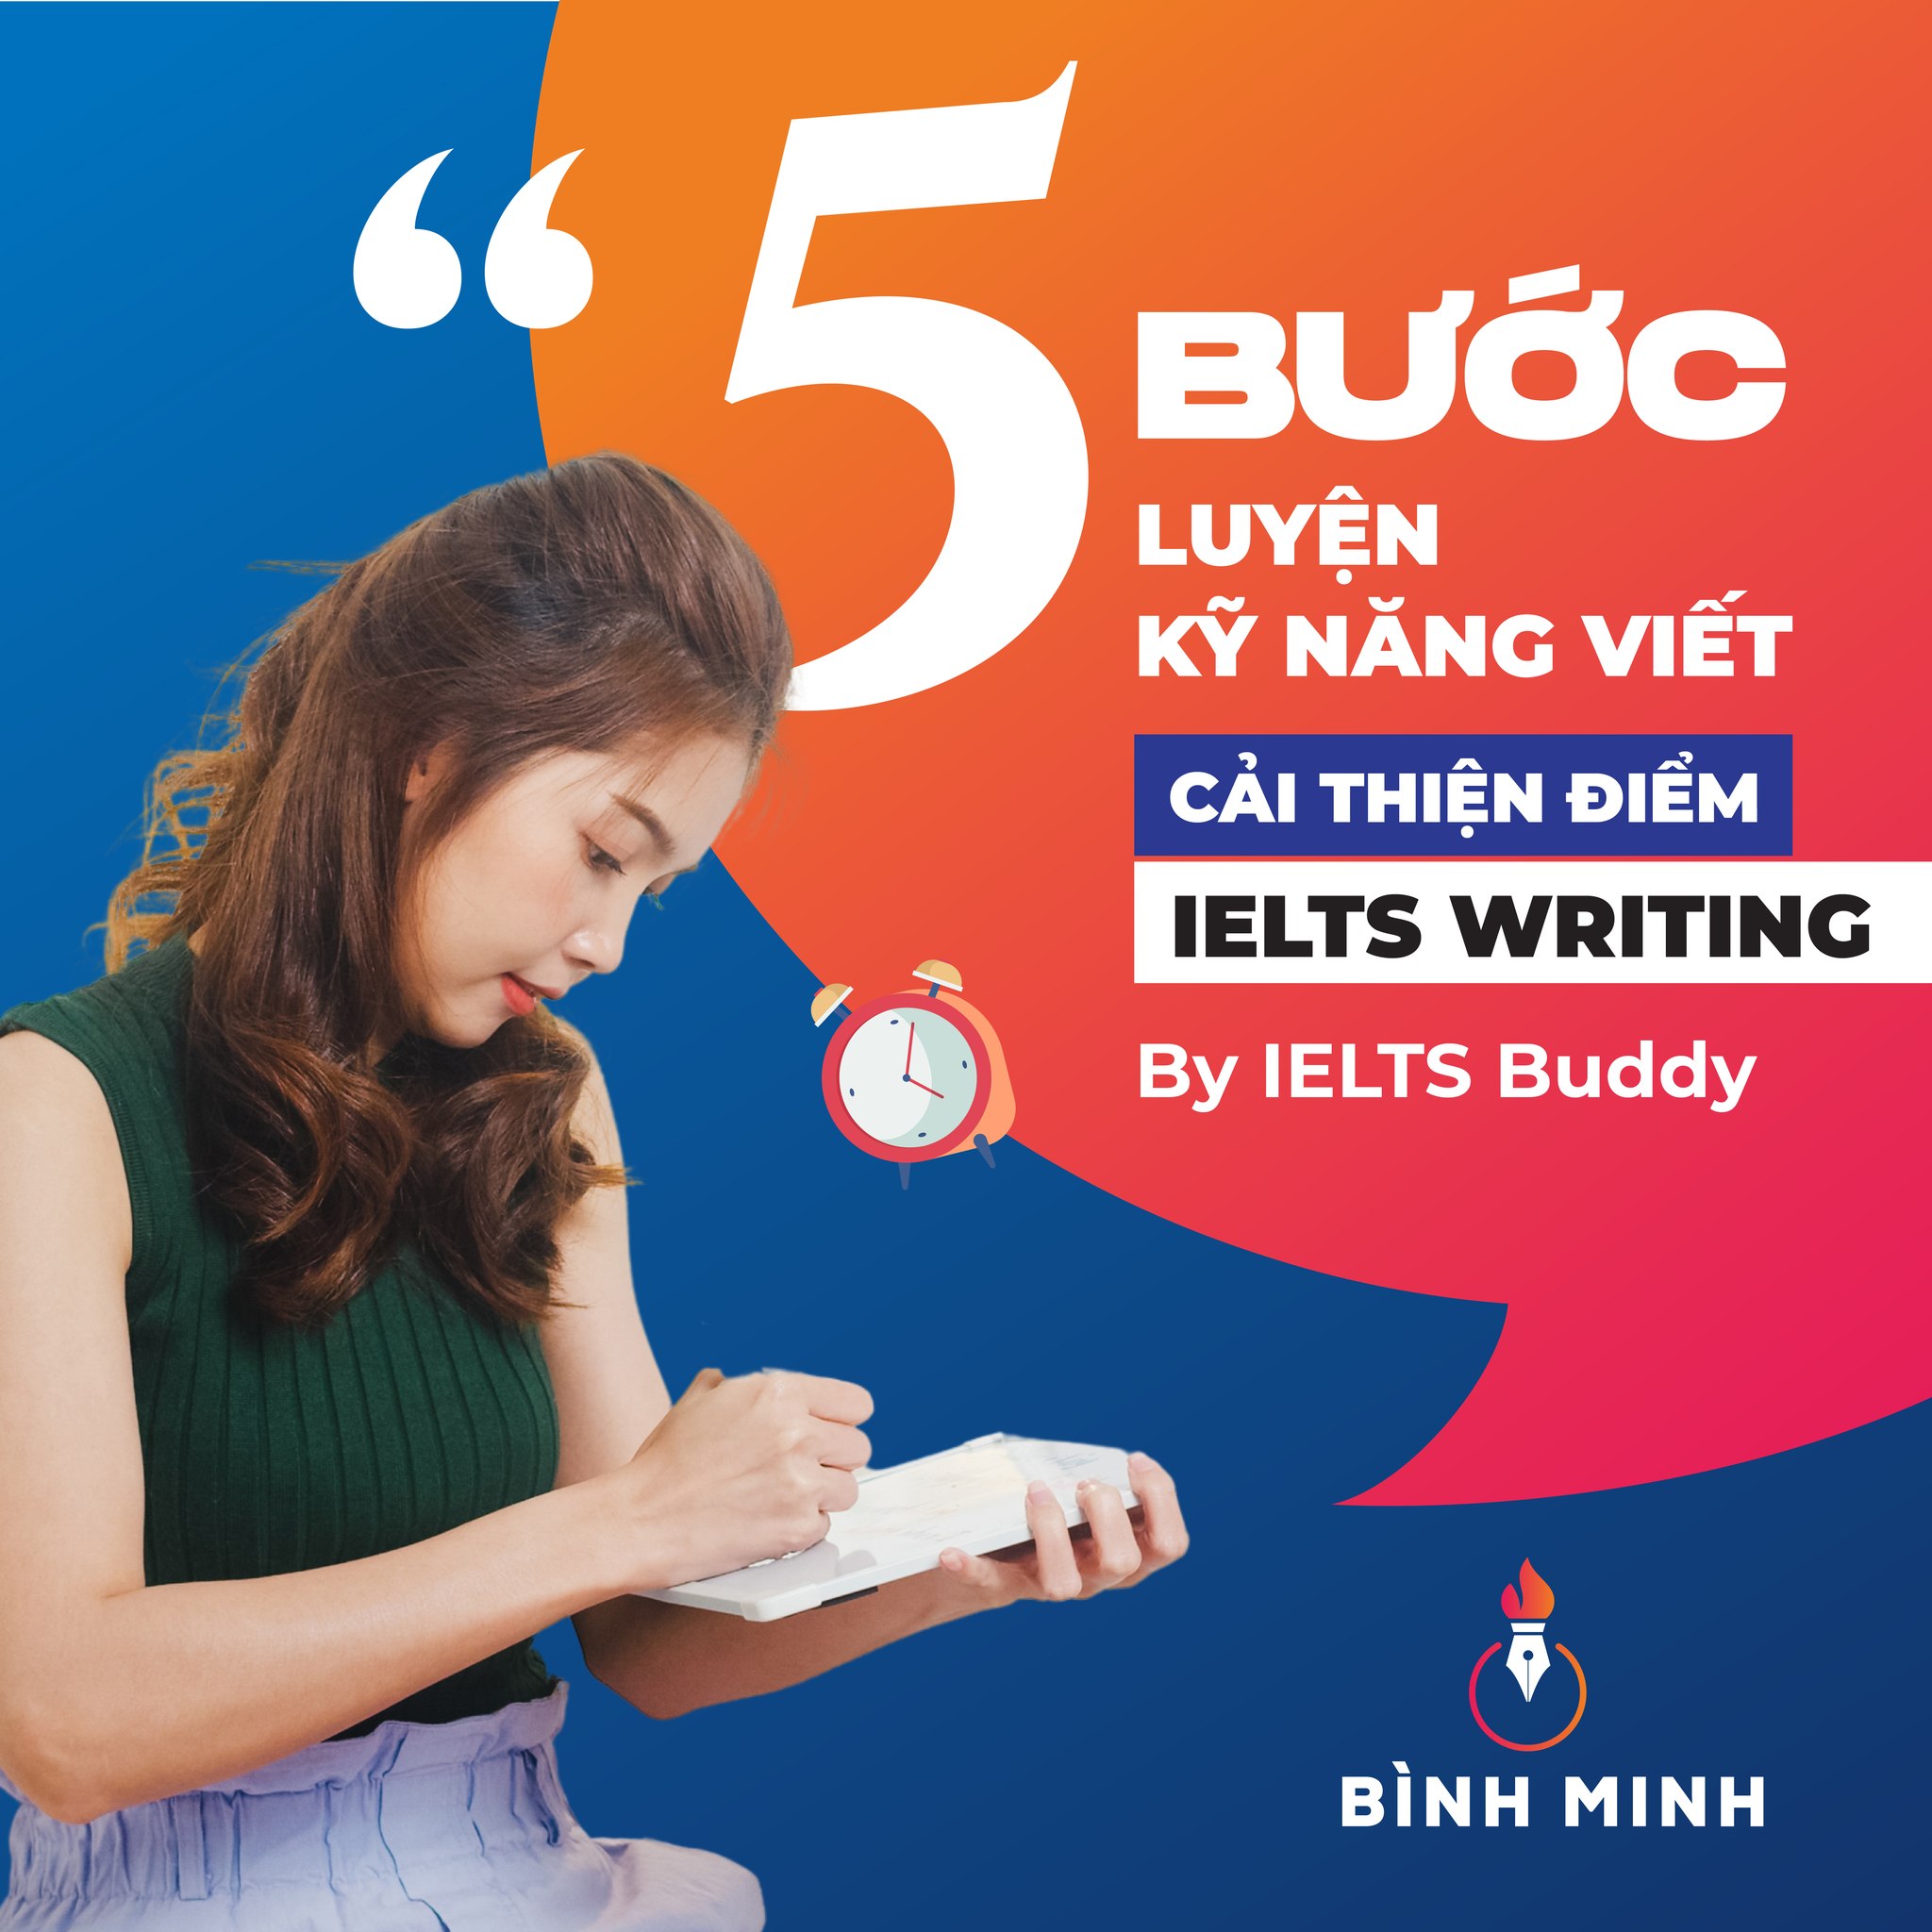 IELTS BUDDY - 5 bước luyện kỹ năng viết cải thiện điểm Writing